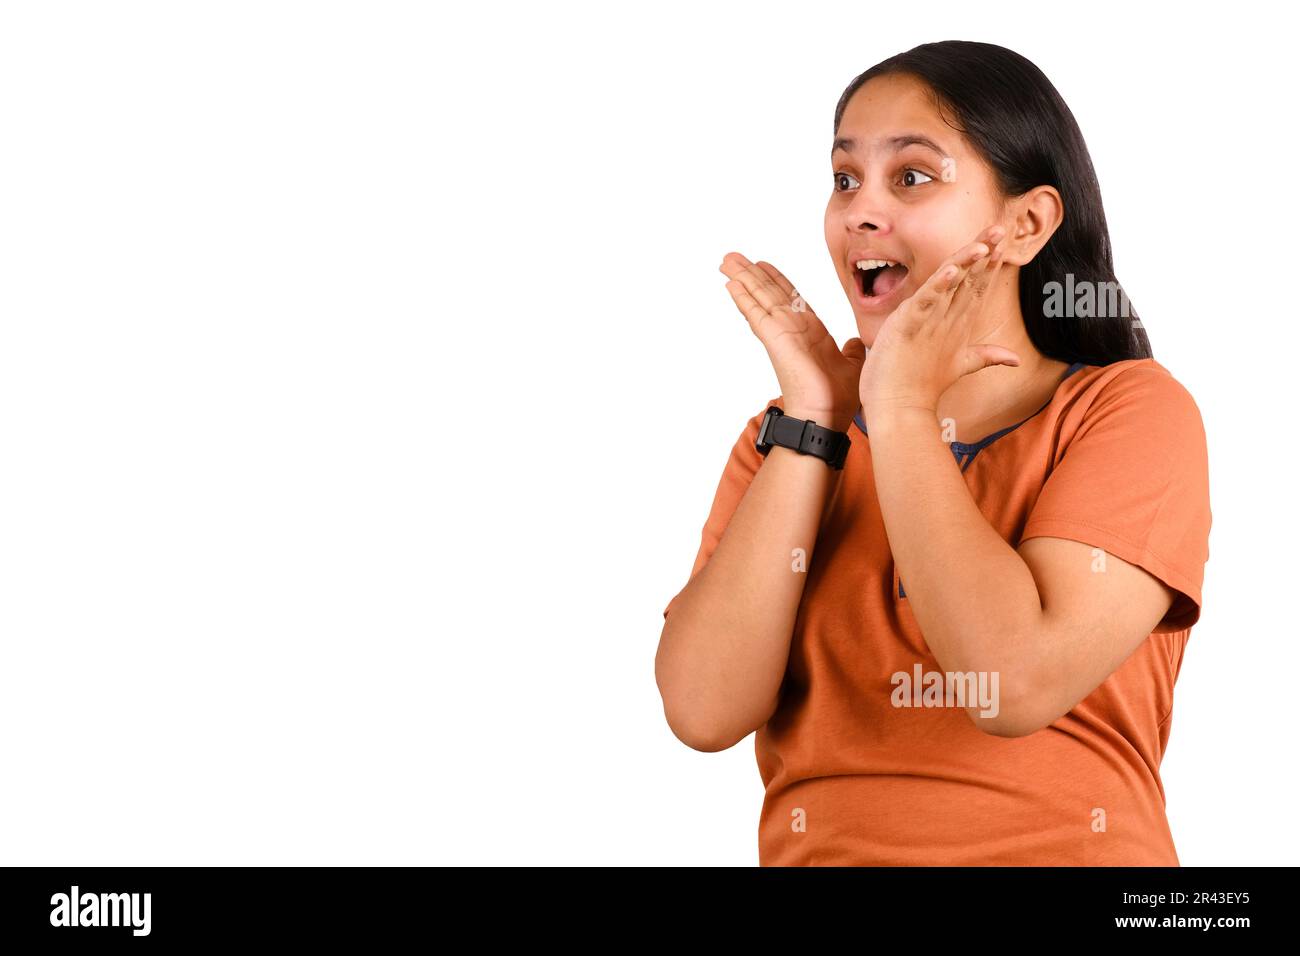 Immagine di giovane ragazza indiana eccitata in piedi isolato su sfondo bianco con Copy Space. Guardando nella fotocamera. Foto Stock